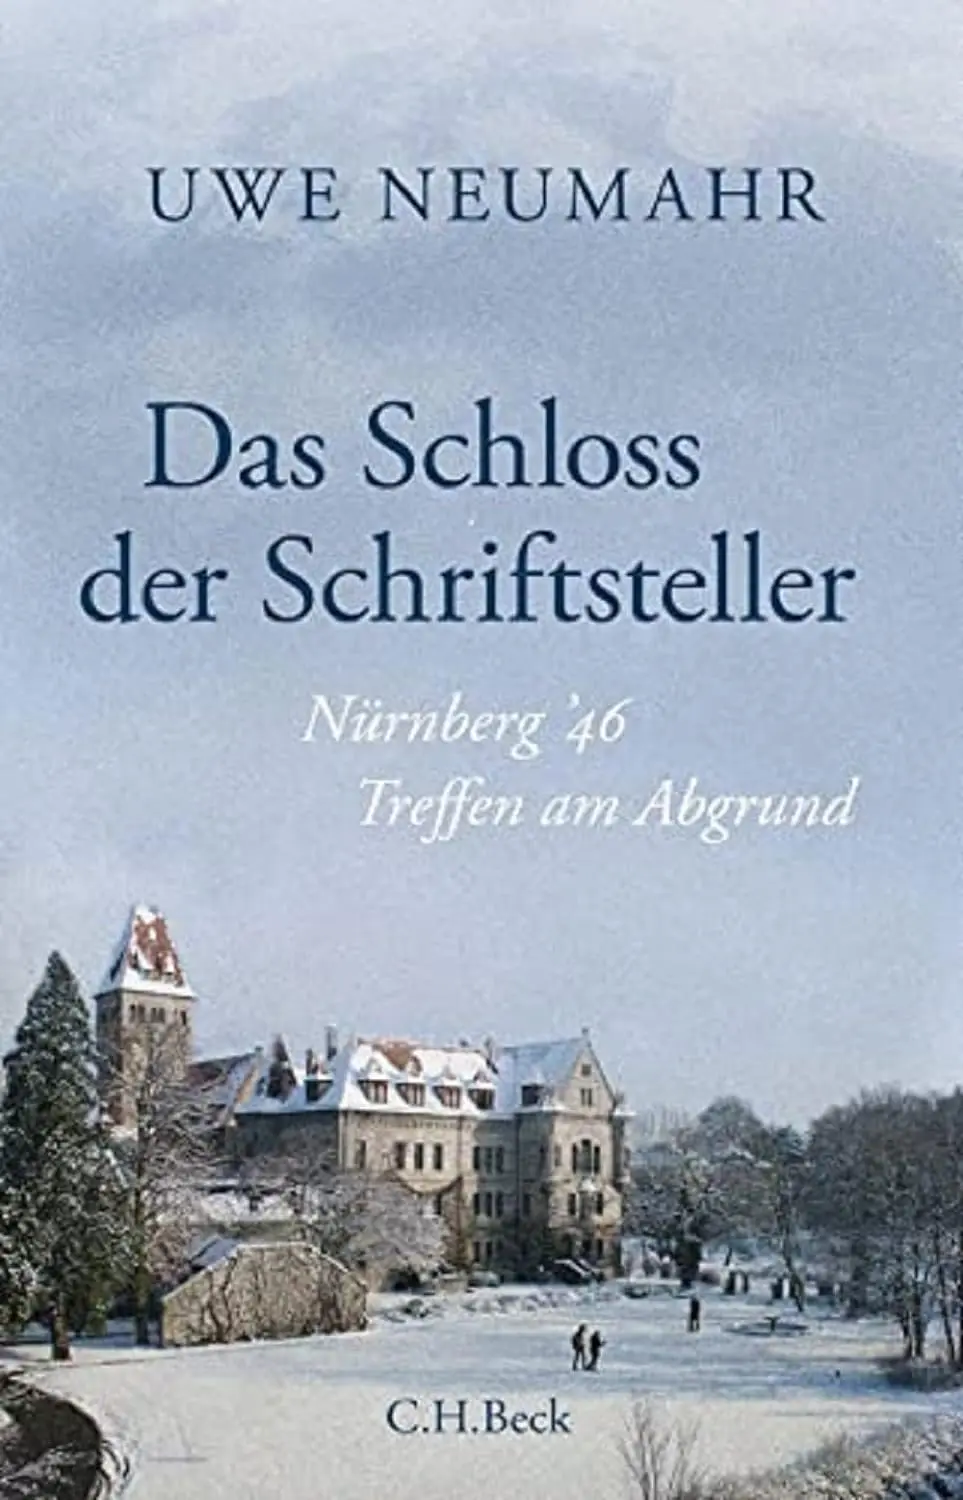 Buchcover: Das Schloss der Schriftsteller von Uwe Neumahr